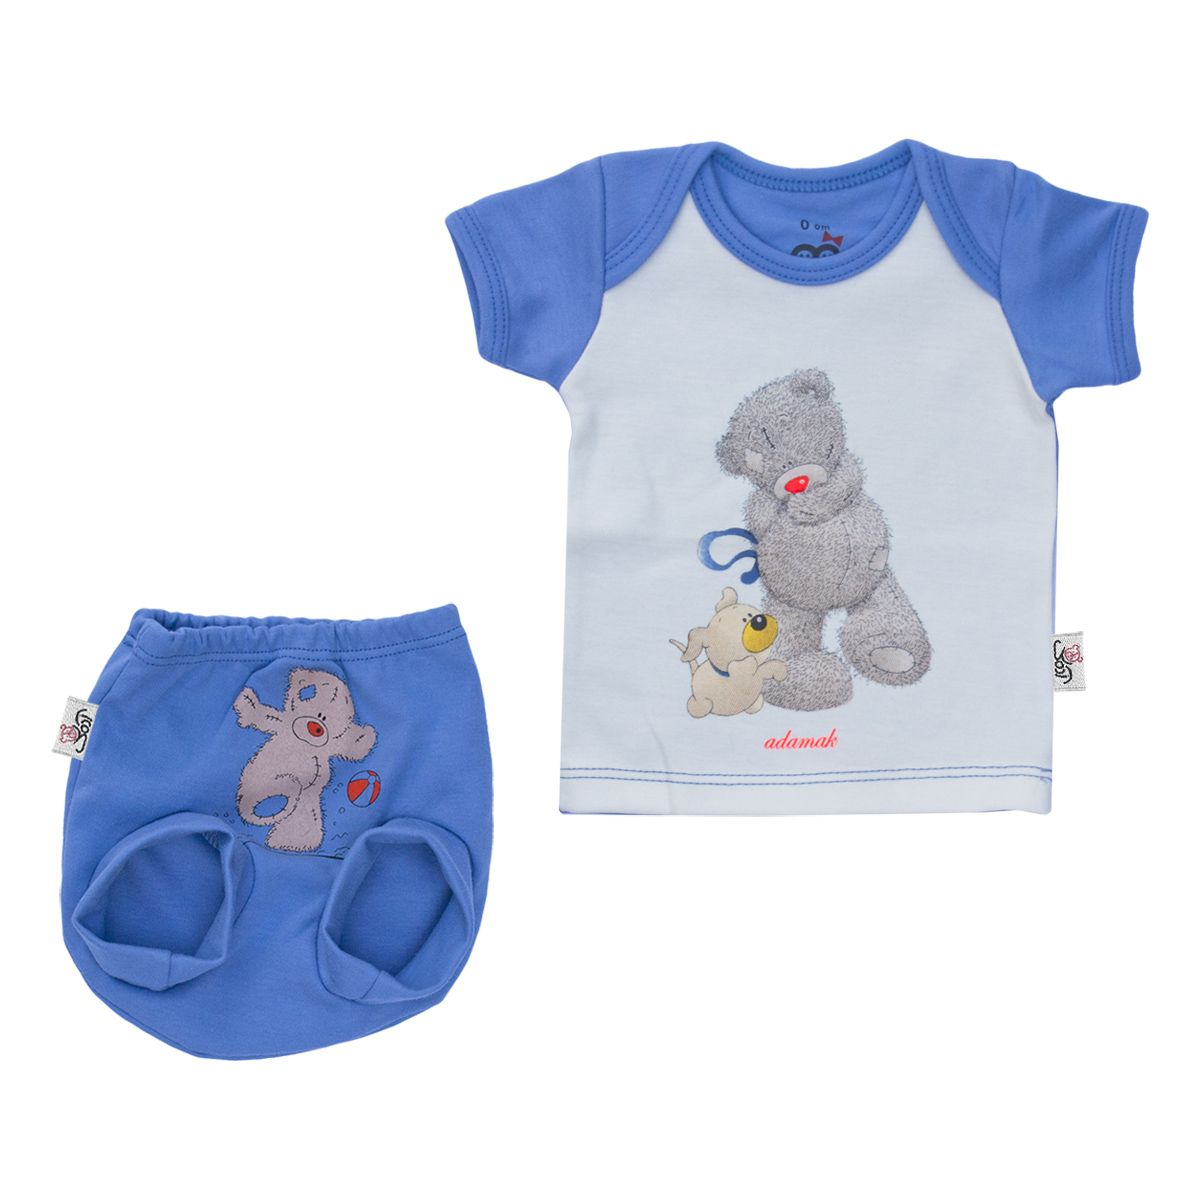 ست تی شرت و شورت نوزادی آدمک طرح خرس پشمالو رنگ آبی -  - 1